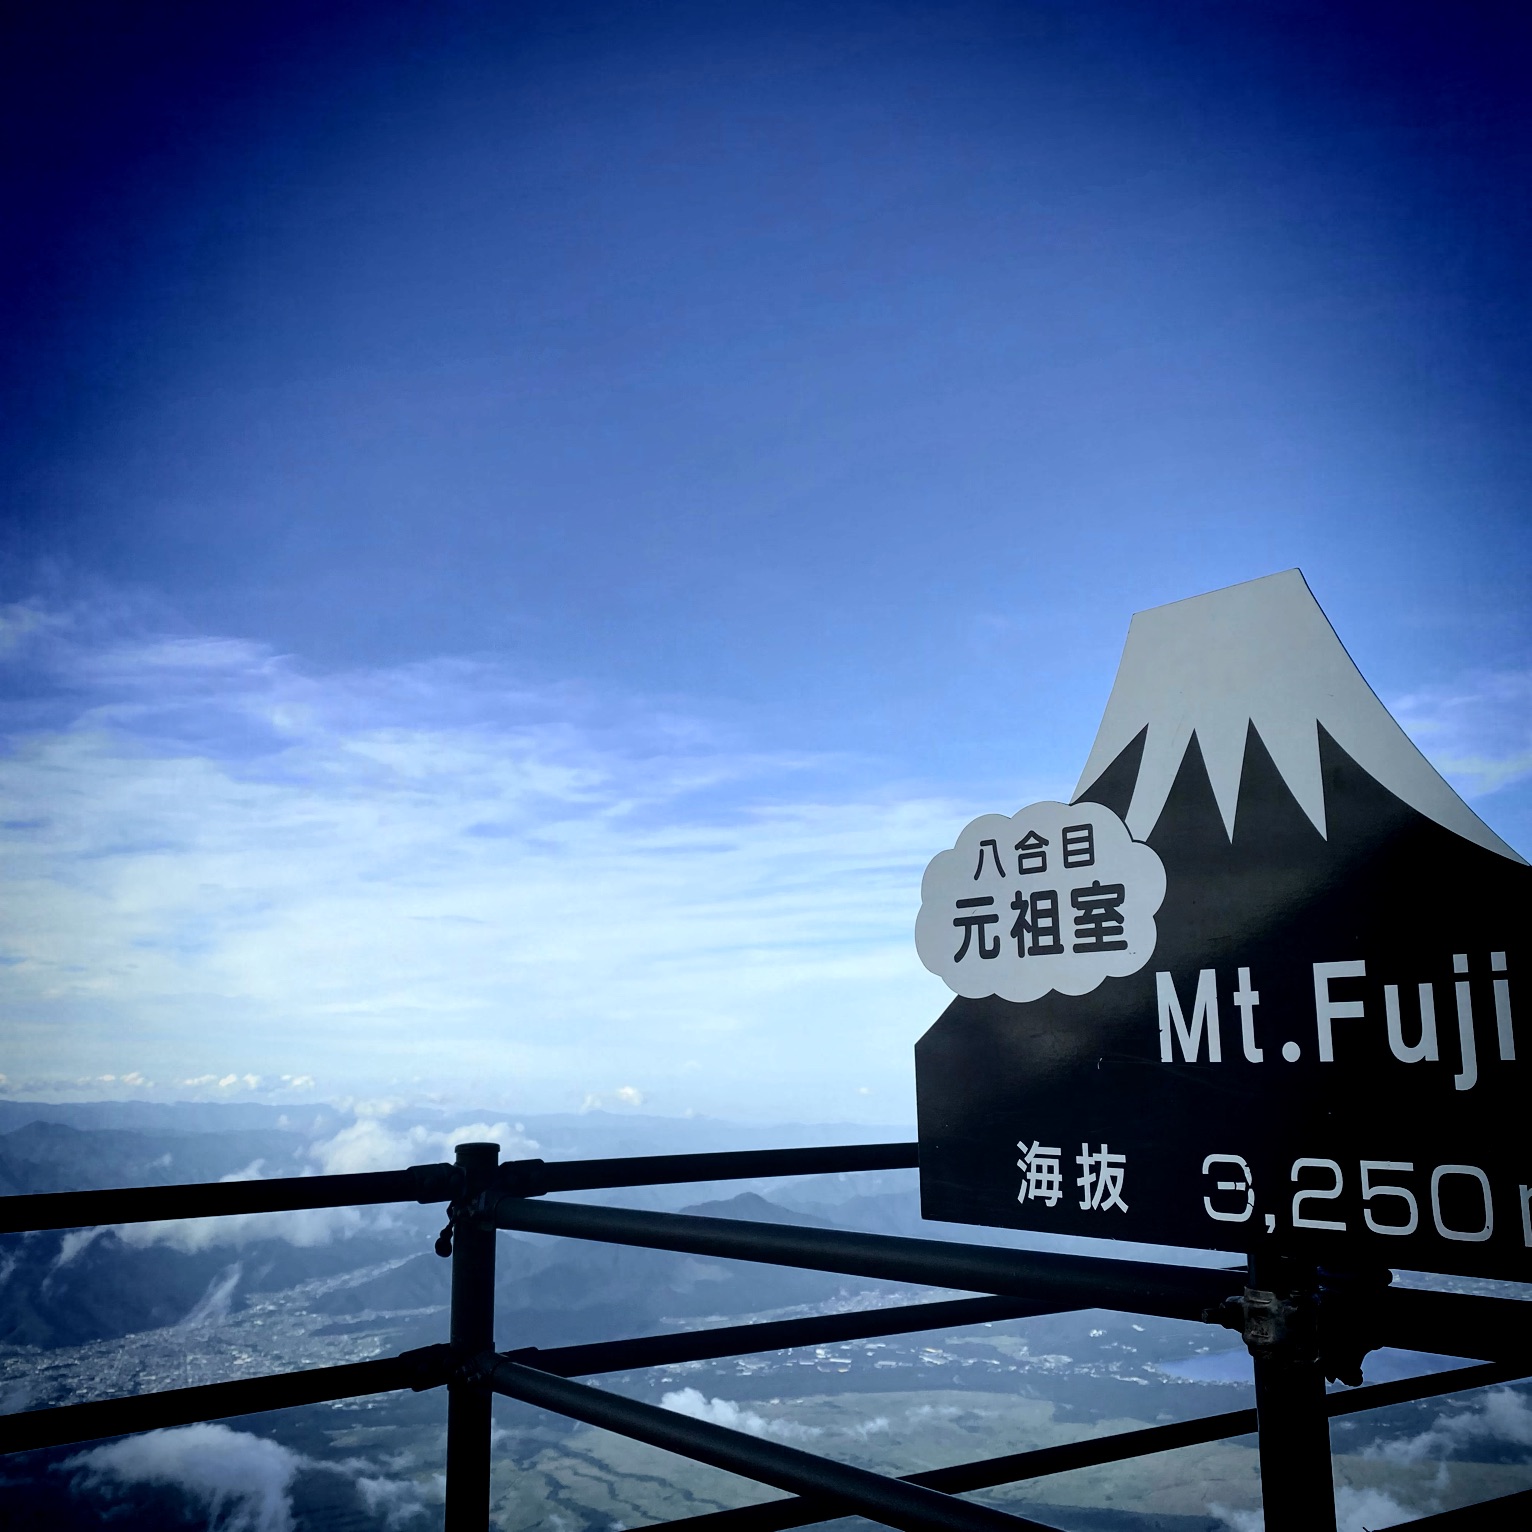 我推荐富士山,因为它的风景很美,空气也很美味。但是,攀登富士山很困难。你应该做好准备。小心